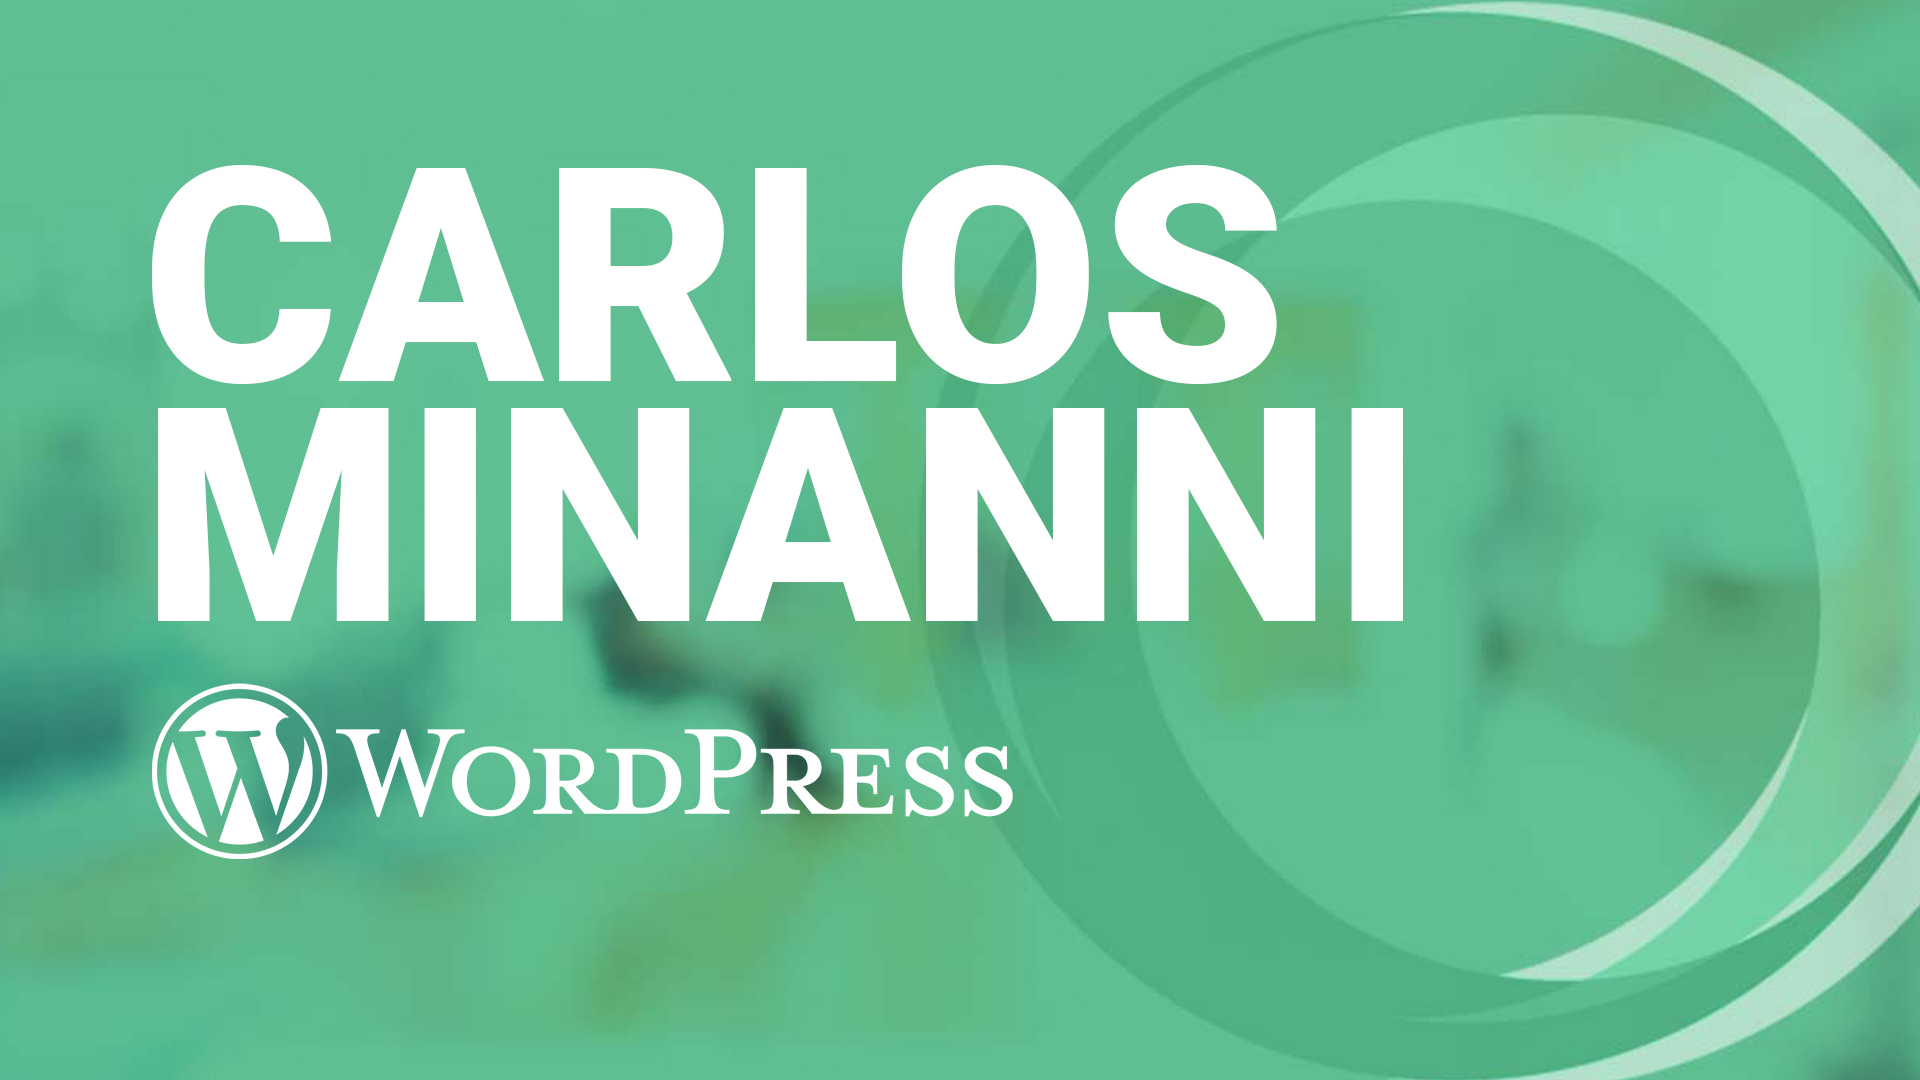 Carlos Minanni WordPress